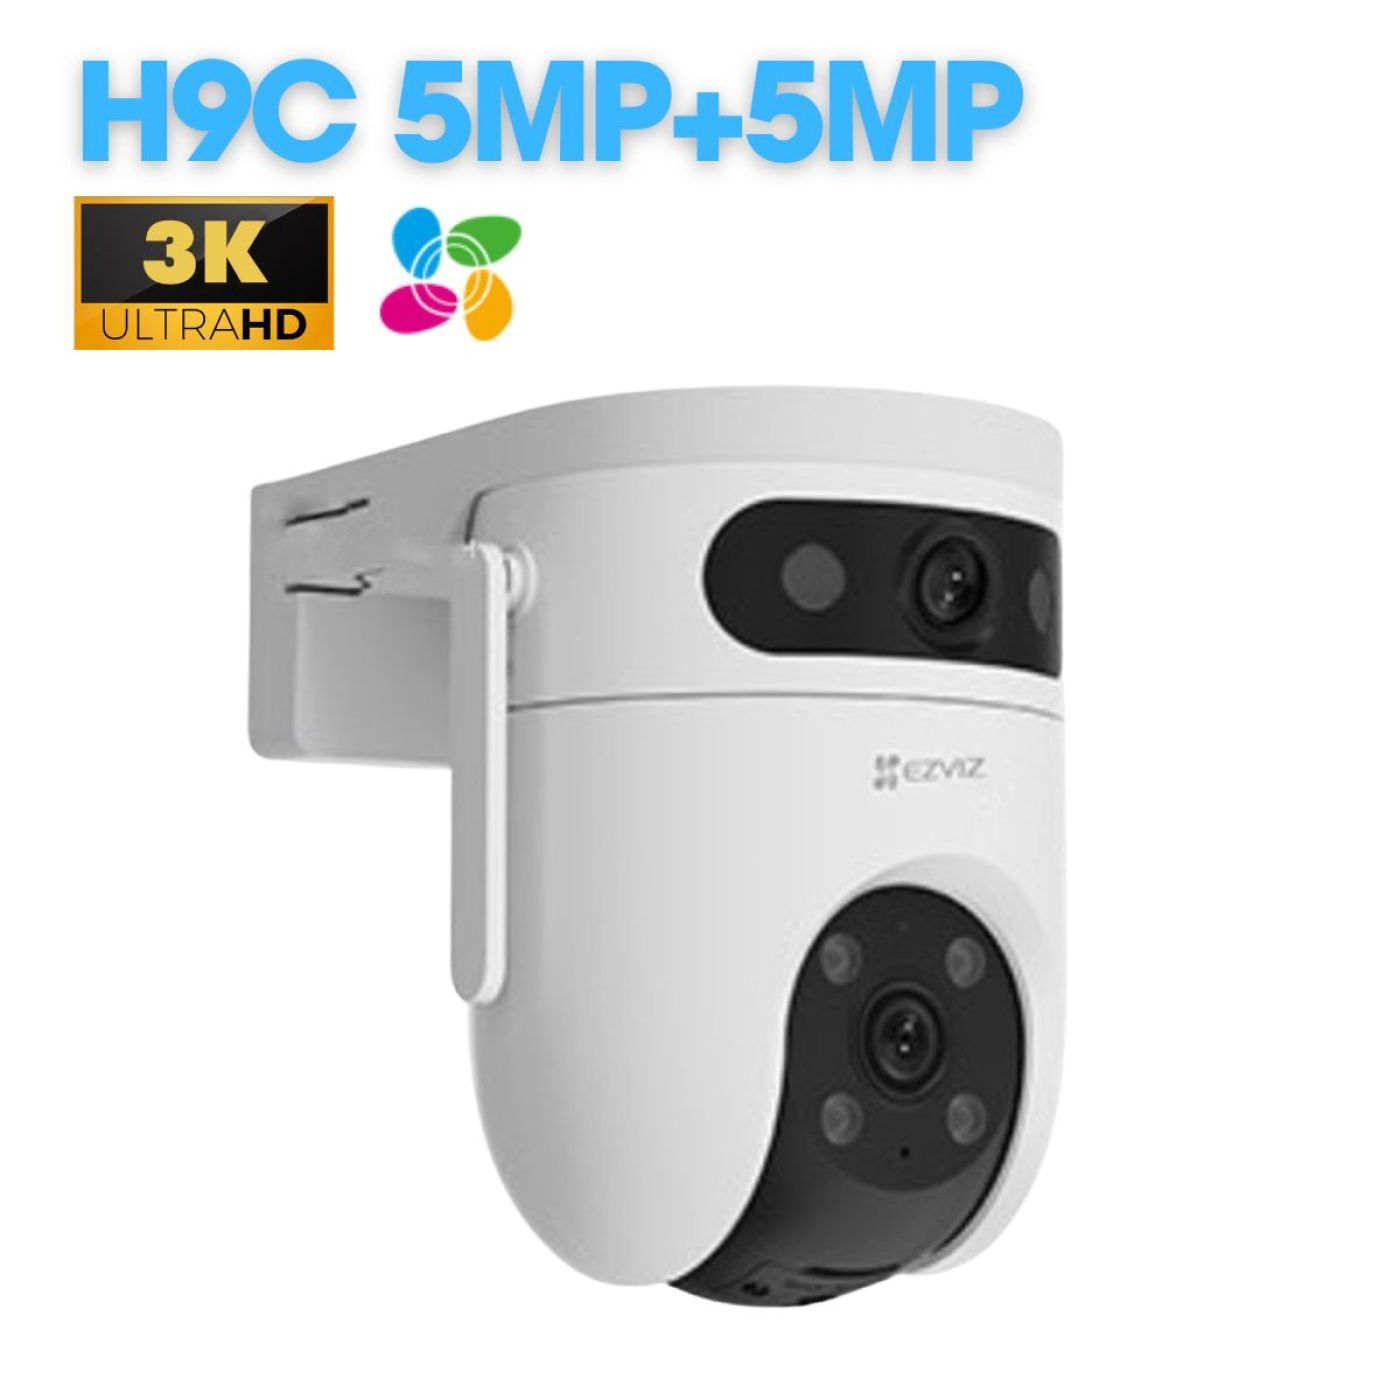 Camera Ngoài Trời Ống Kính Kép Ezviz H9C 5MP 3K chính hãng, màu ban đêm, báo động